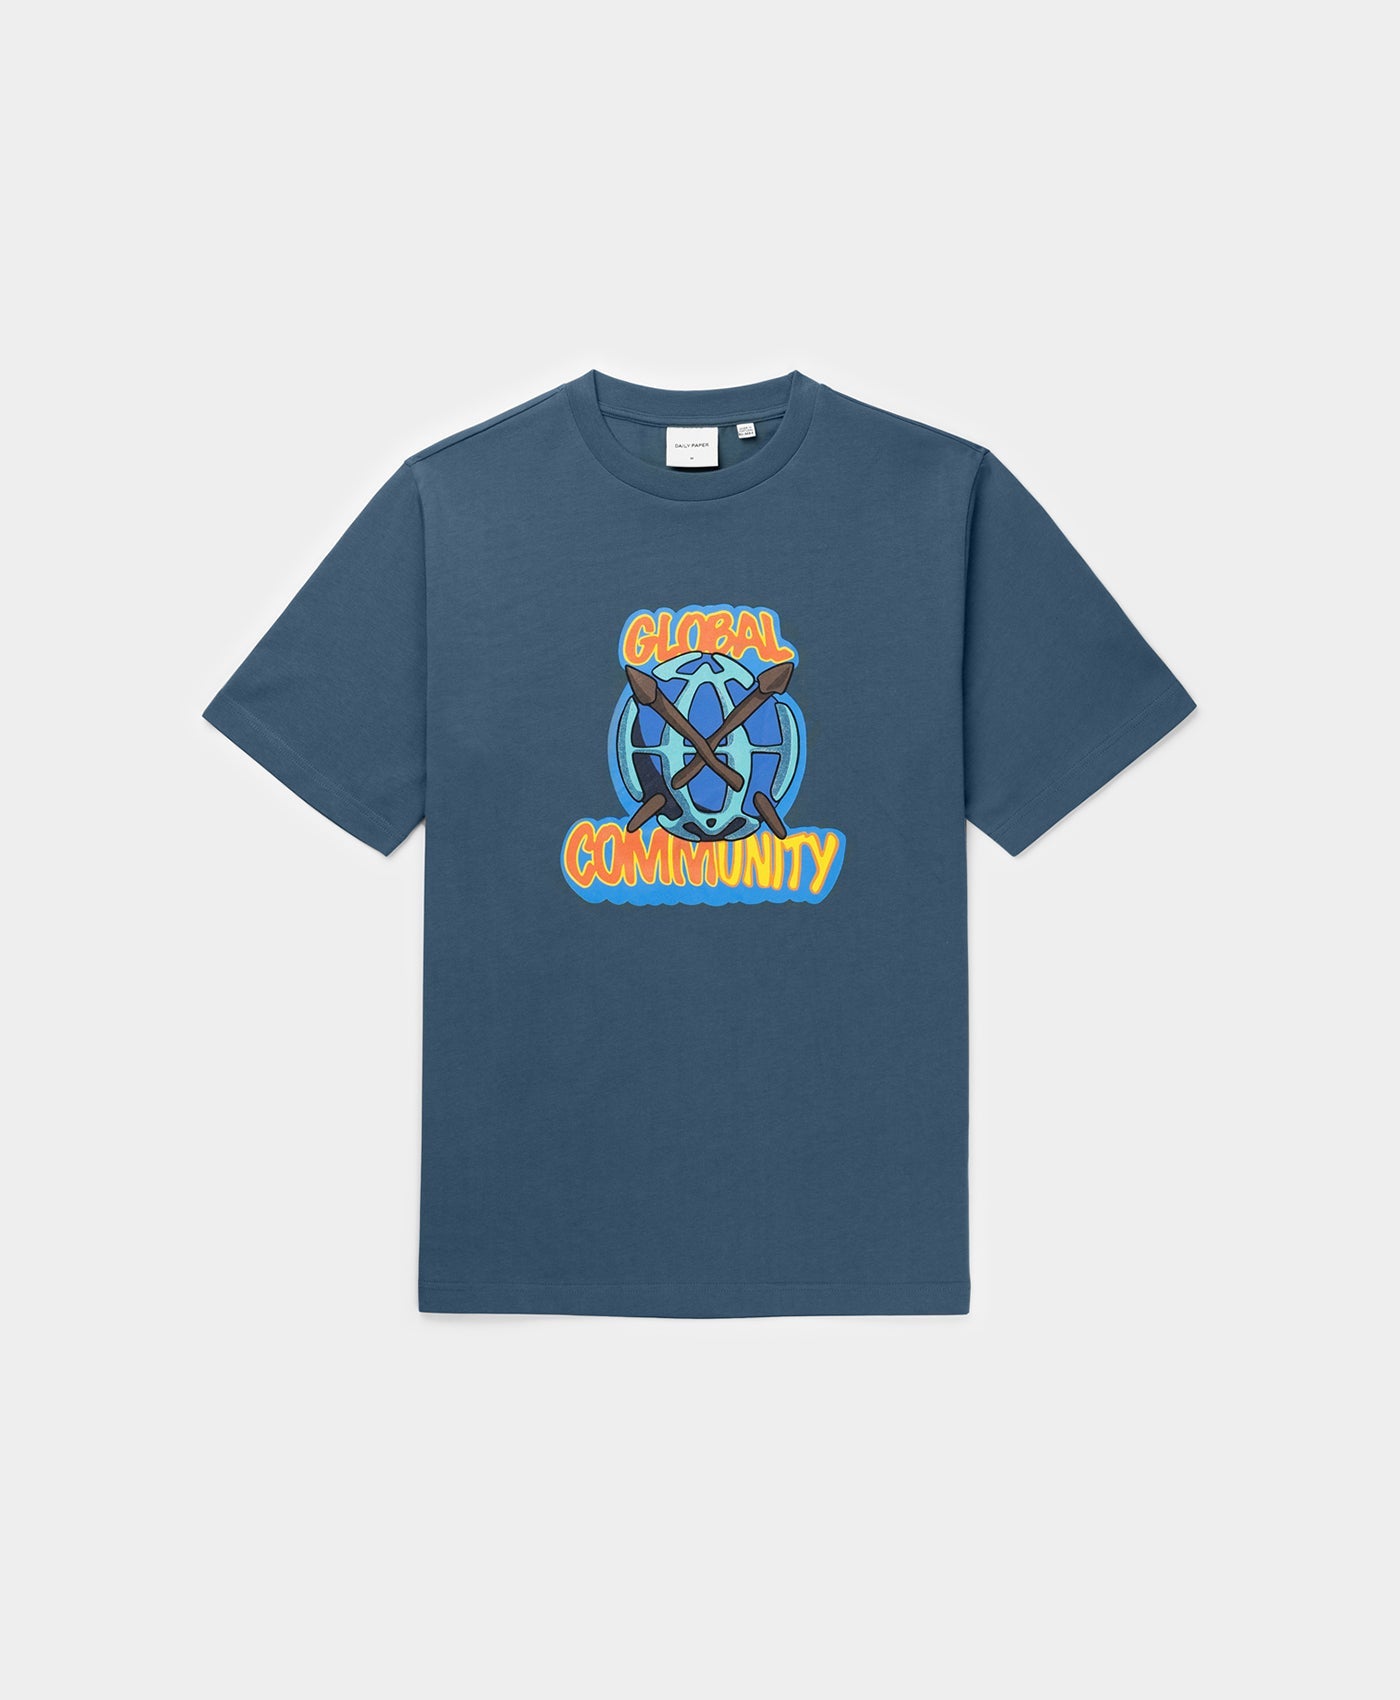 DP - Teal Blue Hobal T-Shirt - Packshot - Front